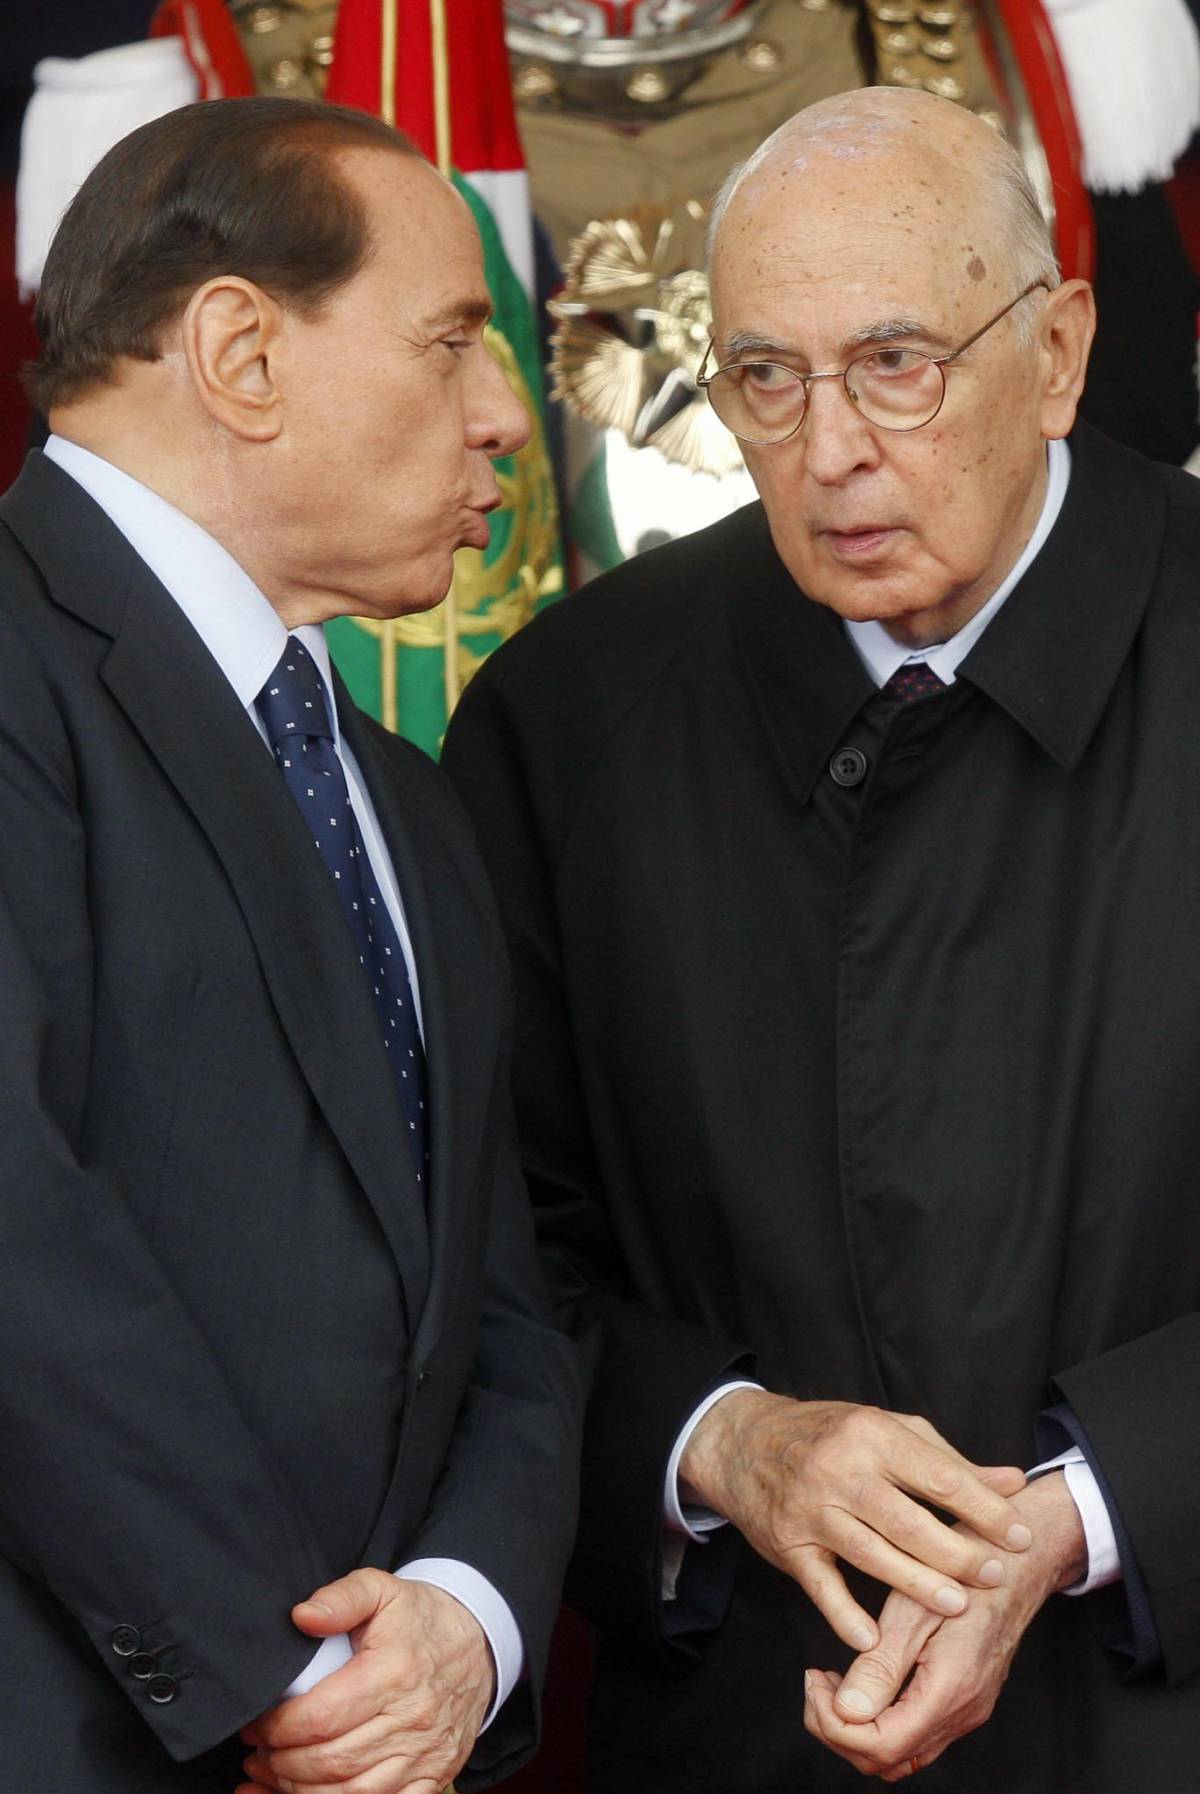 2 giugno, Napolitano: "Rispettare la Repubblica" 
La folla acclama Berlusconi: "Santo subito"